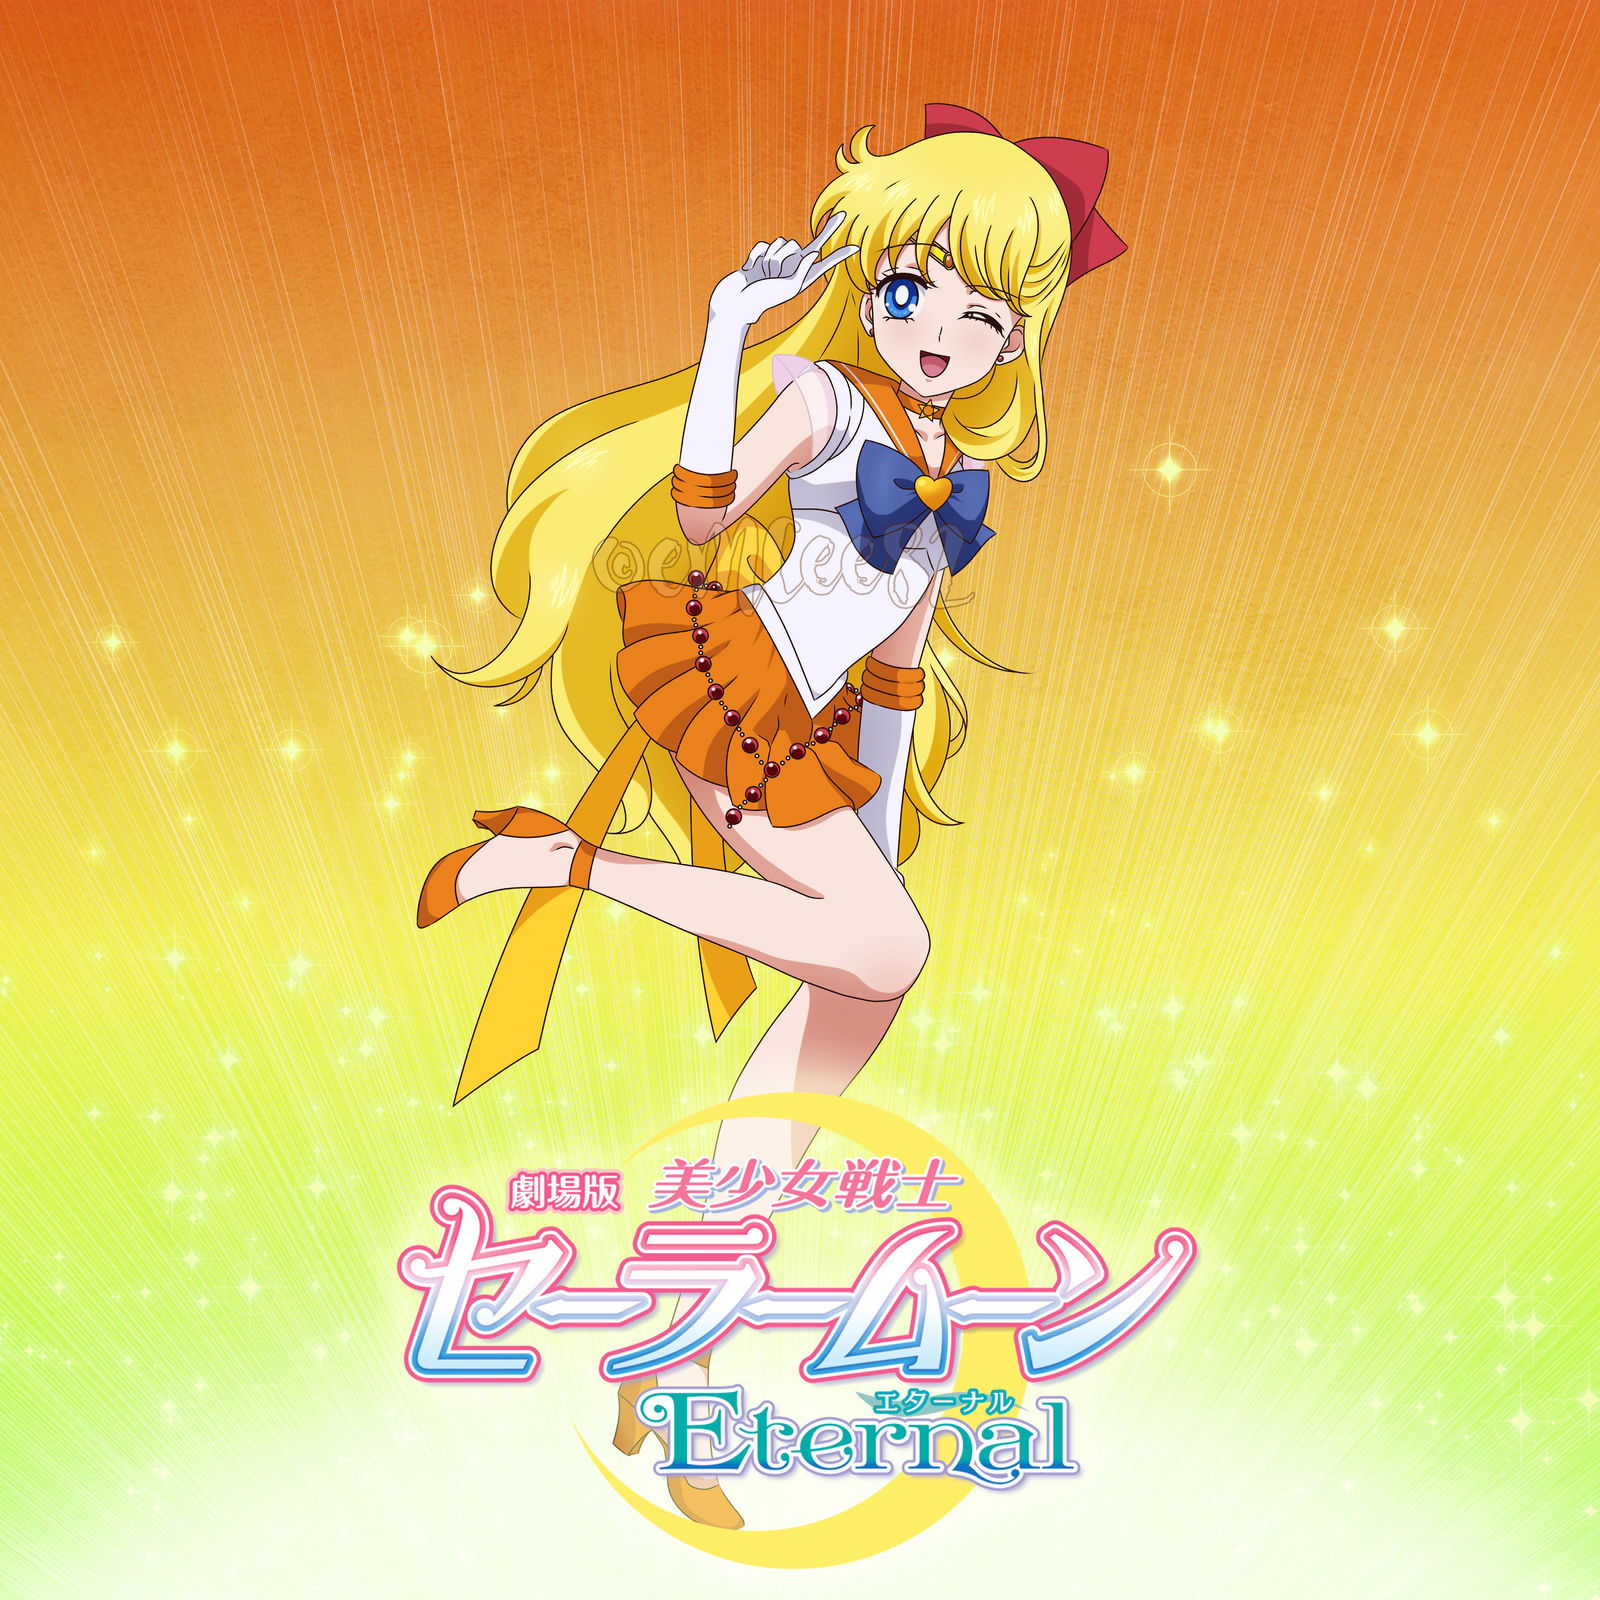 Sailor Moon Eternal Movie Crystal Season 3 Style by xuweisen on DeviantArt